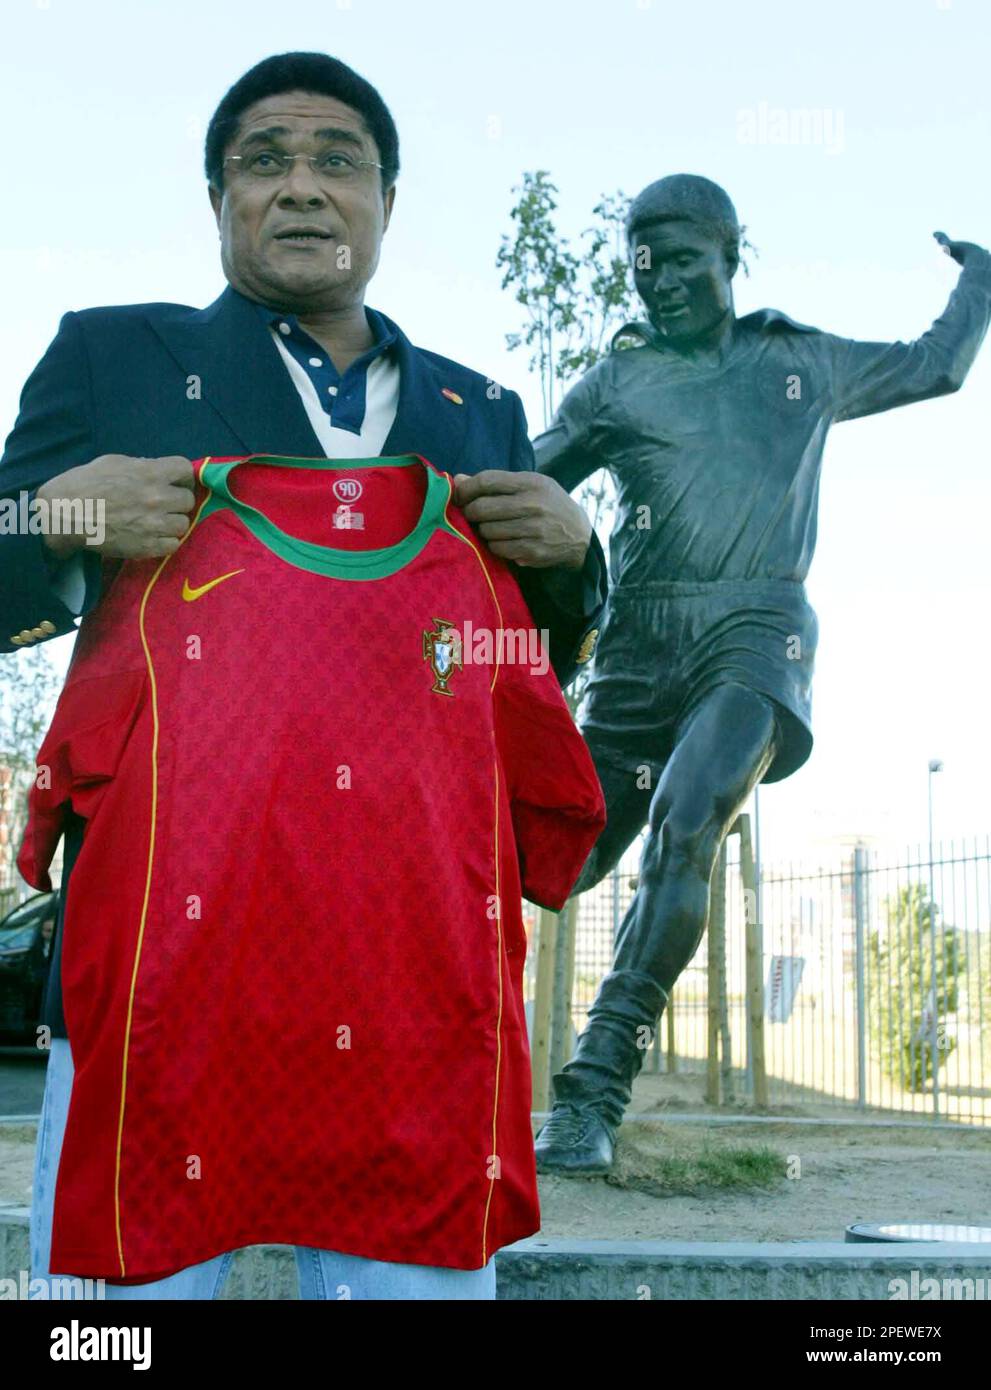 Eusebio Portugal soccer jersey